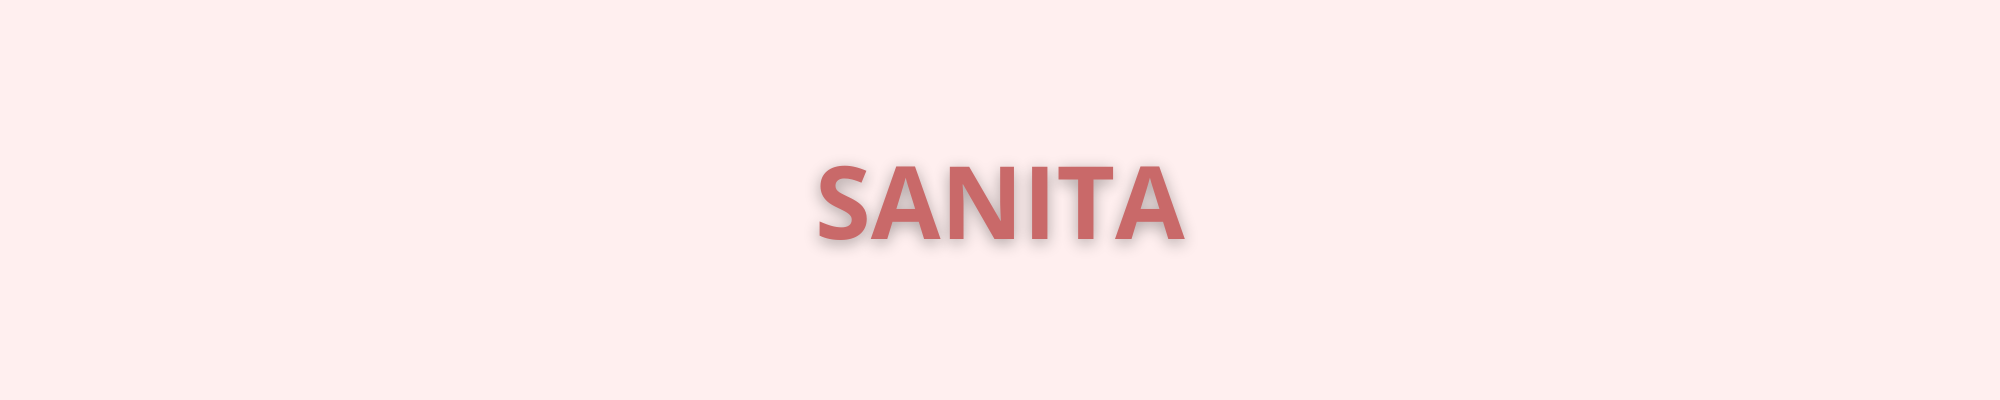 Sanita - שולה- אתר הנעליים שלך